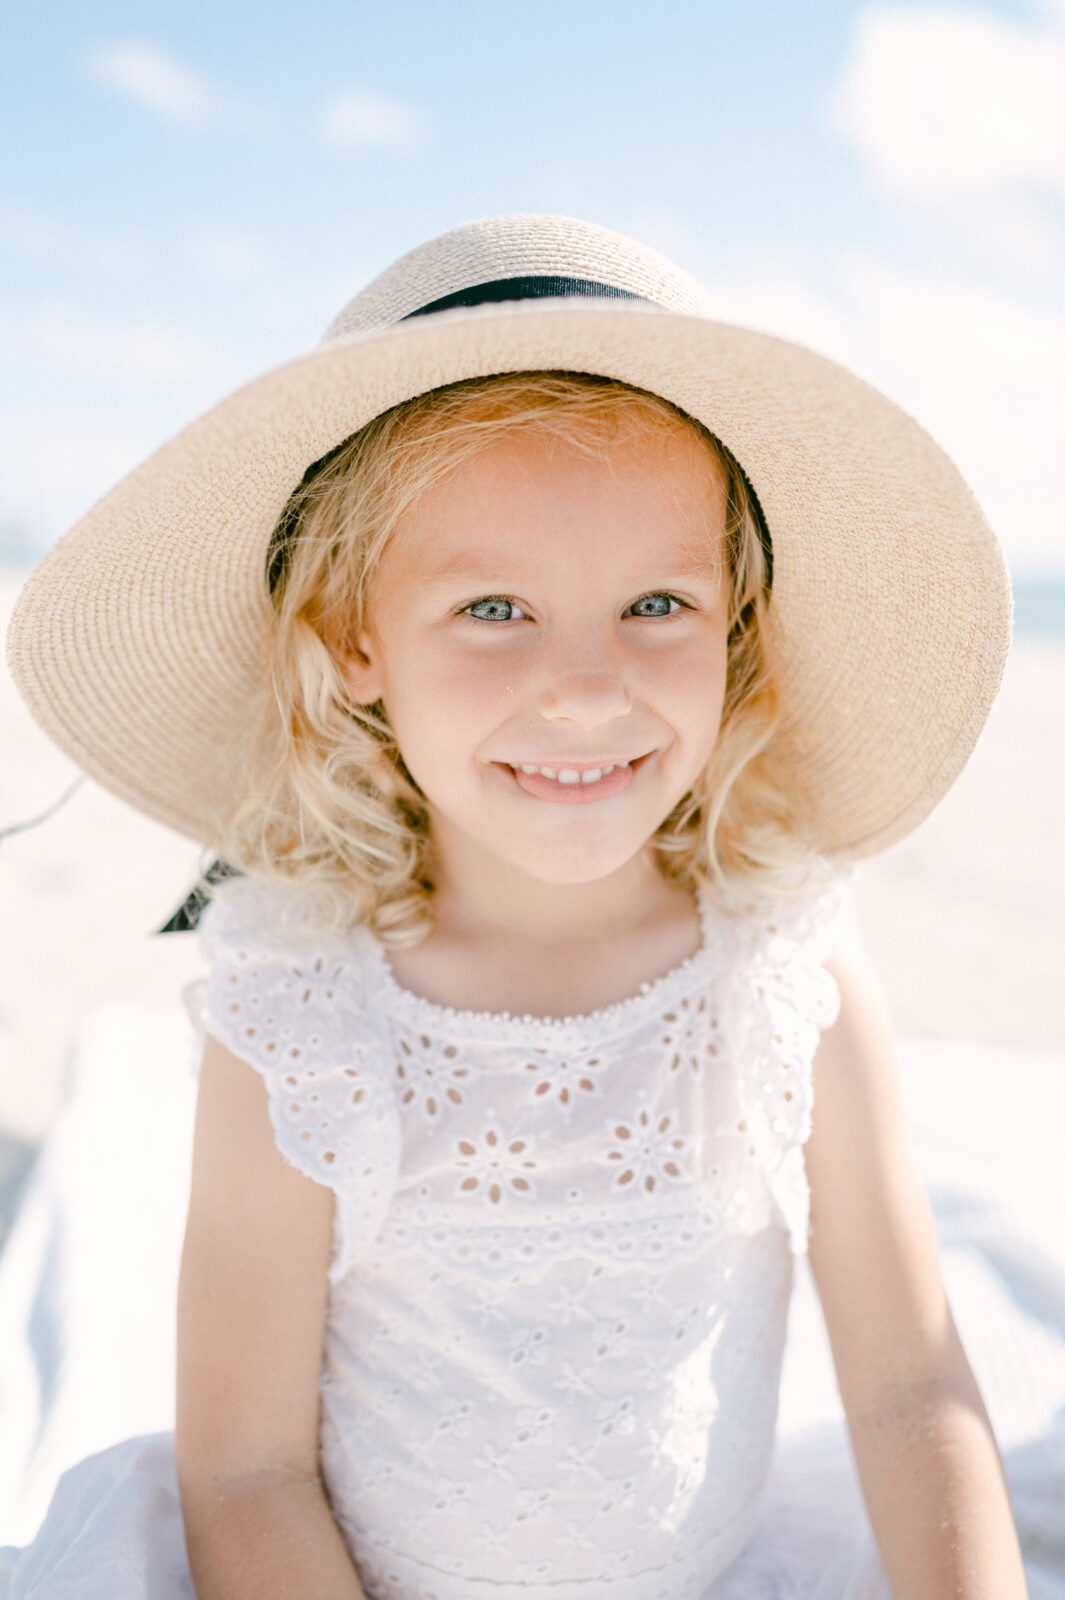 Summer hat blue eyed girl toddler portrait in Miami Beach